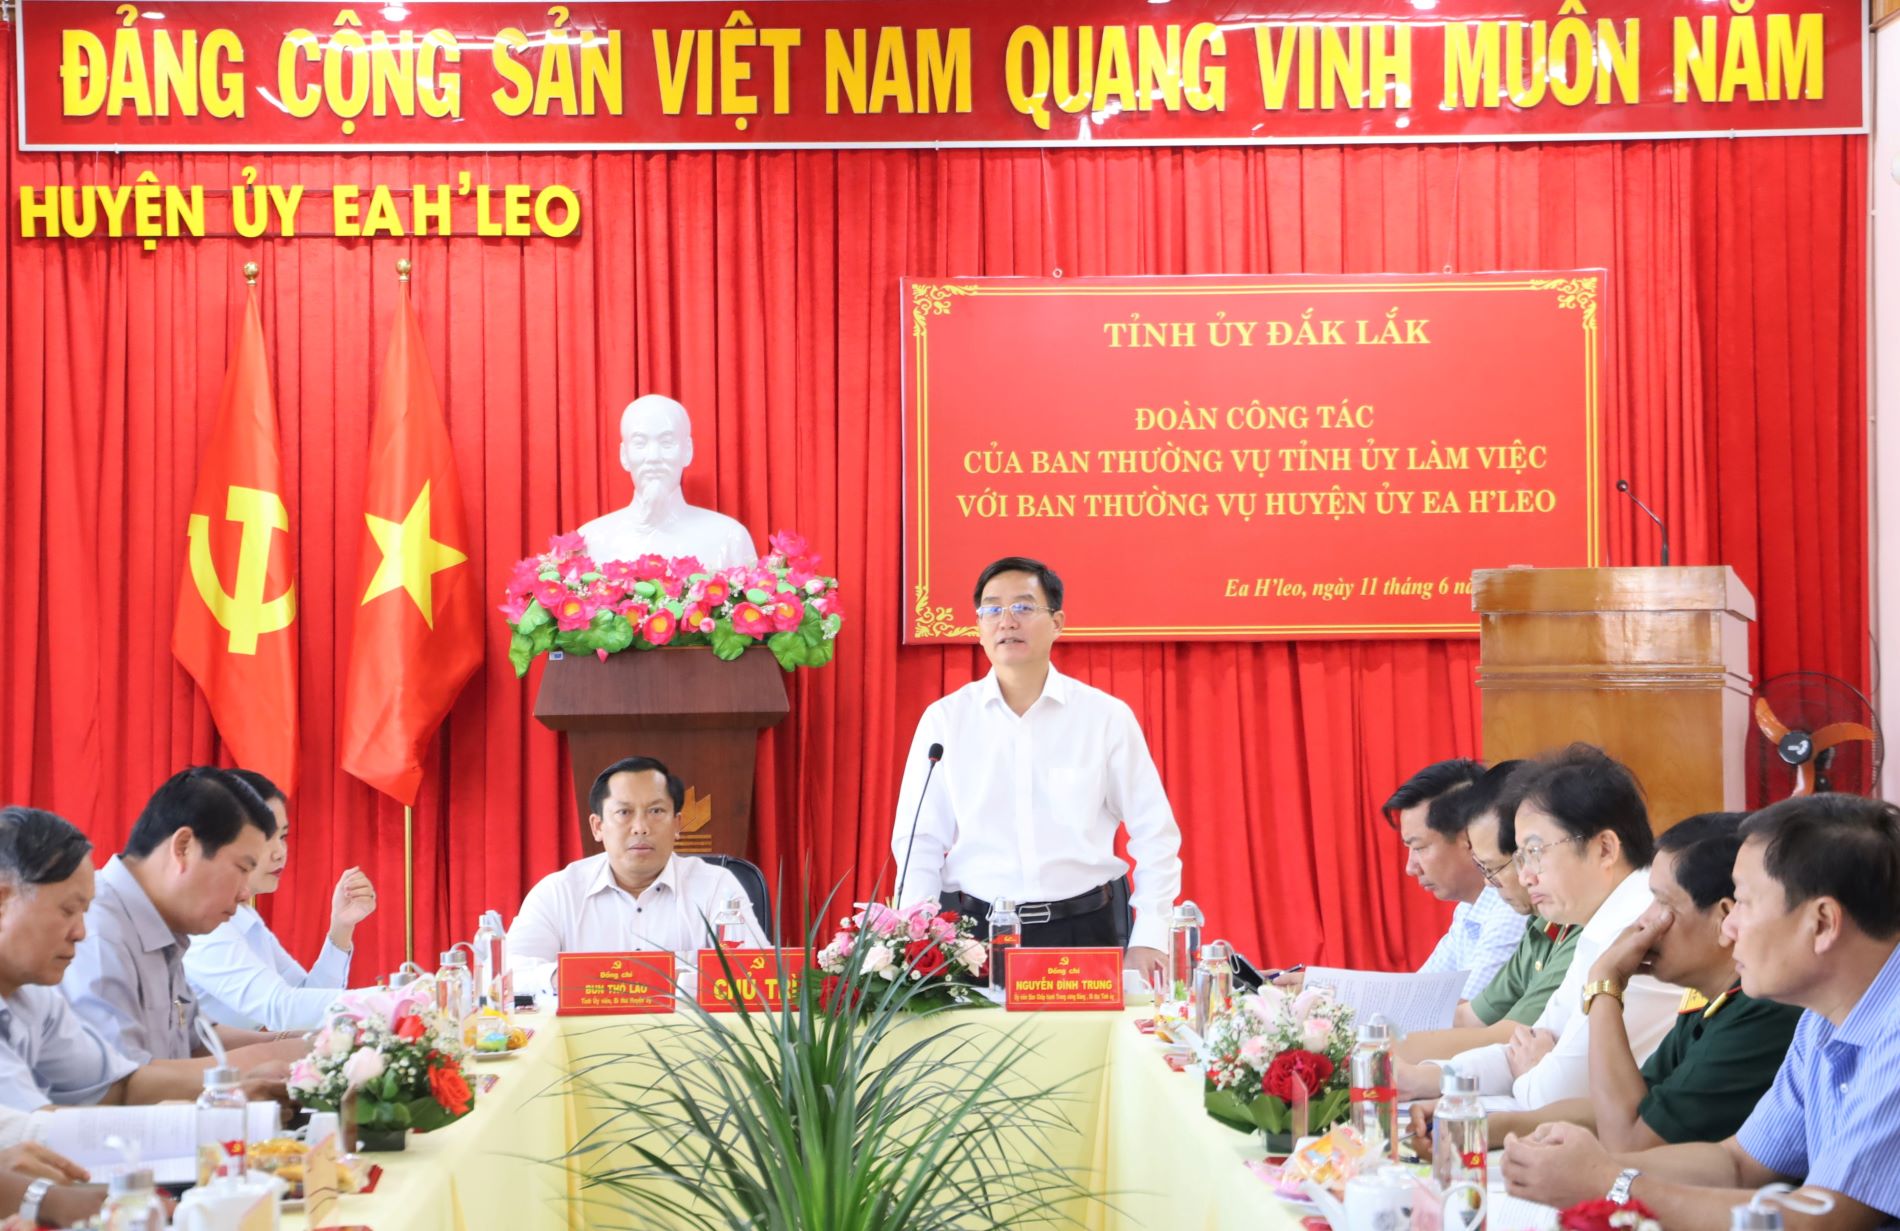 Đoàn công tác của Ban Thường vụ Tỉnh ủy Đắk Lắk làm việc với Huyện ủy Ea H’leo